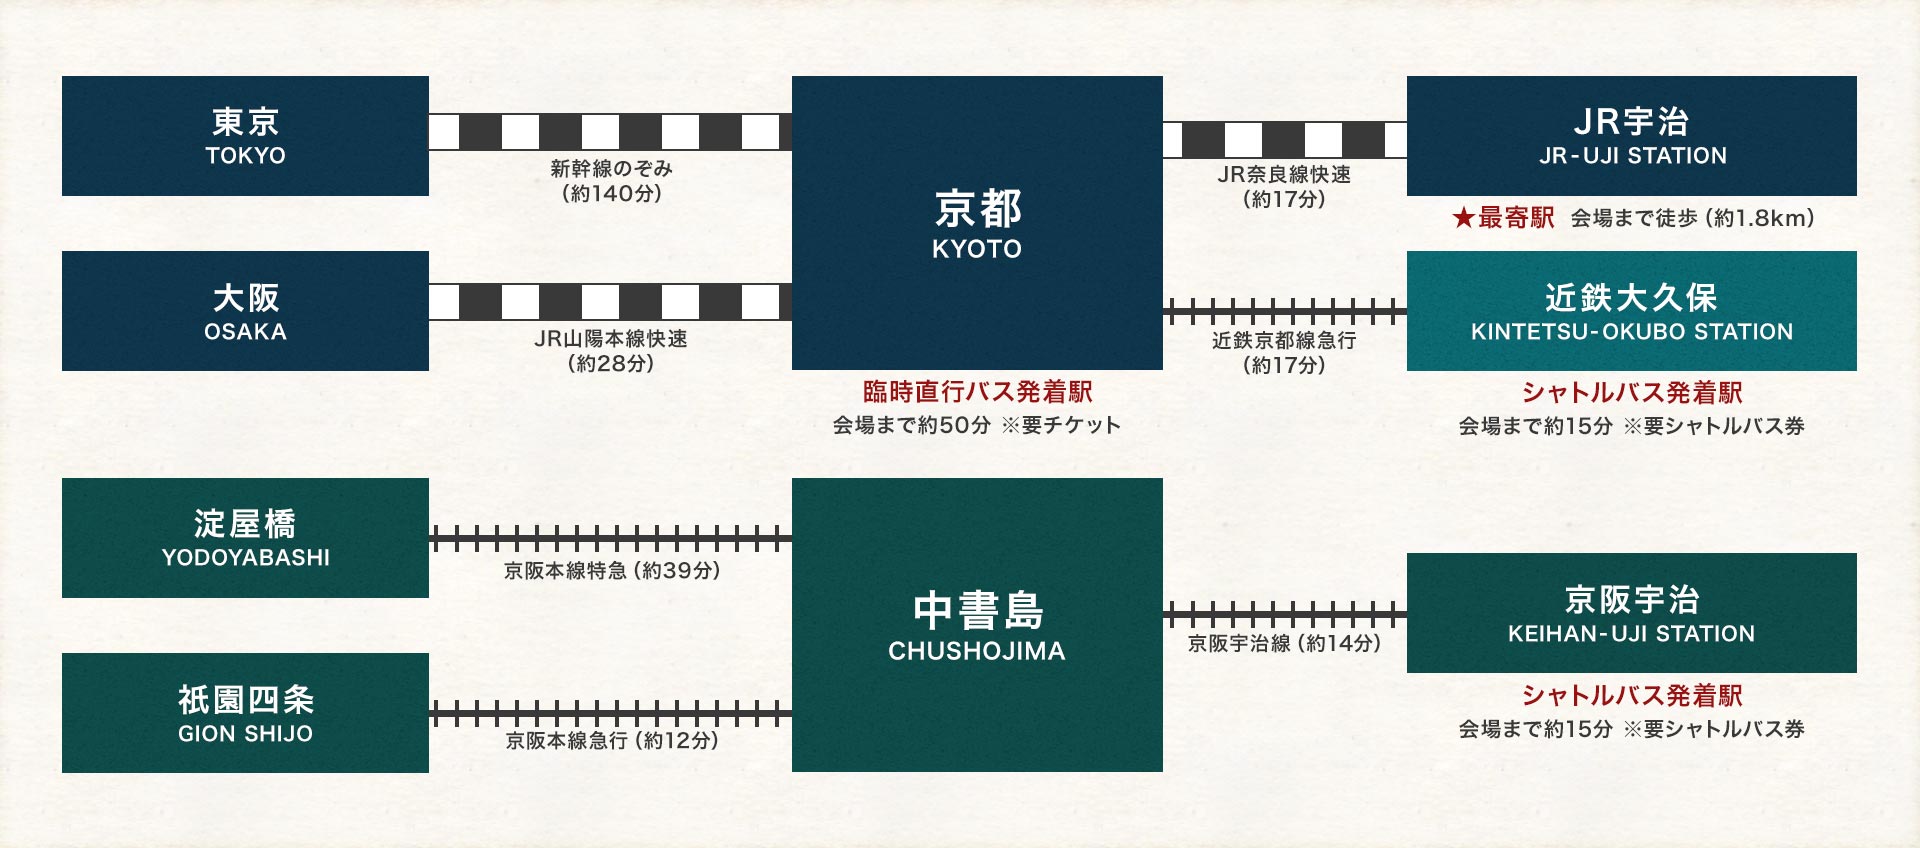 会場までの電車でのアクセス図:京都駅から会場まで約50分です。最寄り駅はJR宇治駅、近鉄大久保駅と京阪宇治駅からは有料のシャトルバスが運行します。シャトルバスは会場まで約15分です。